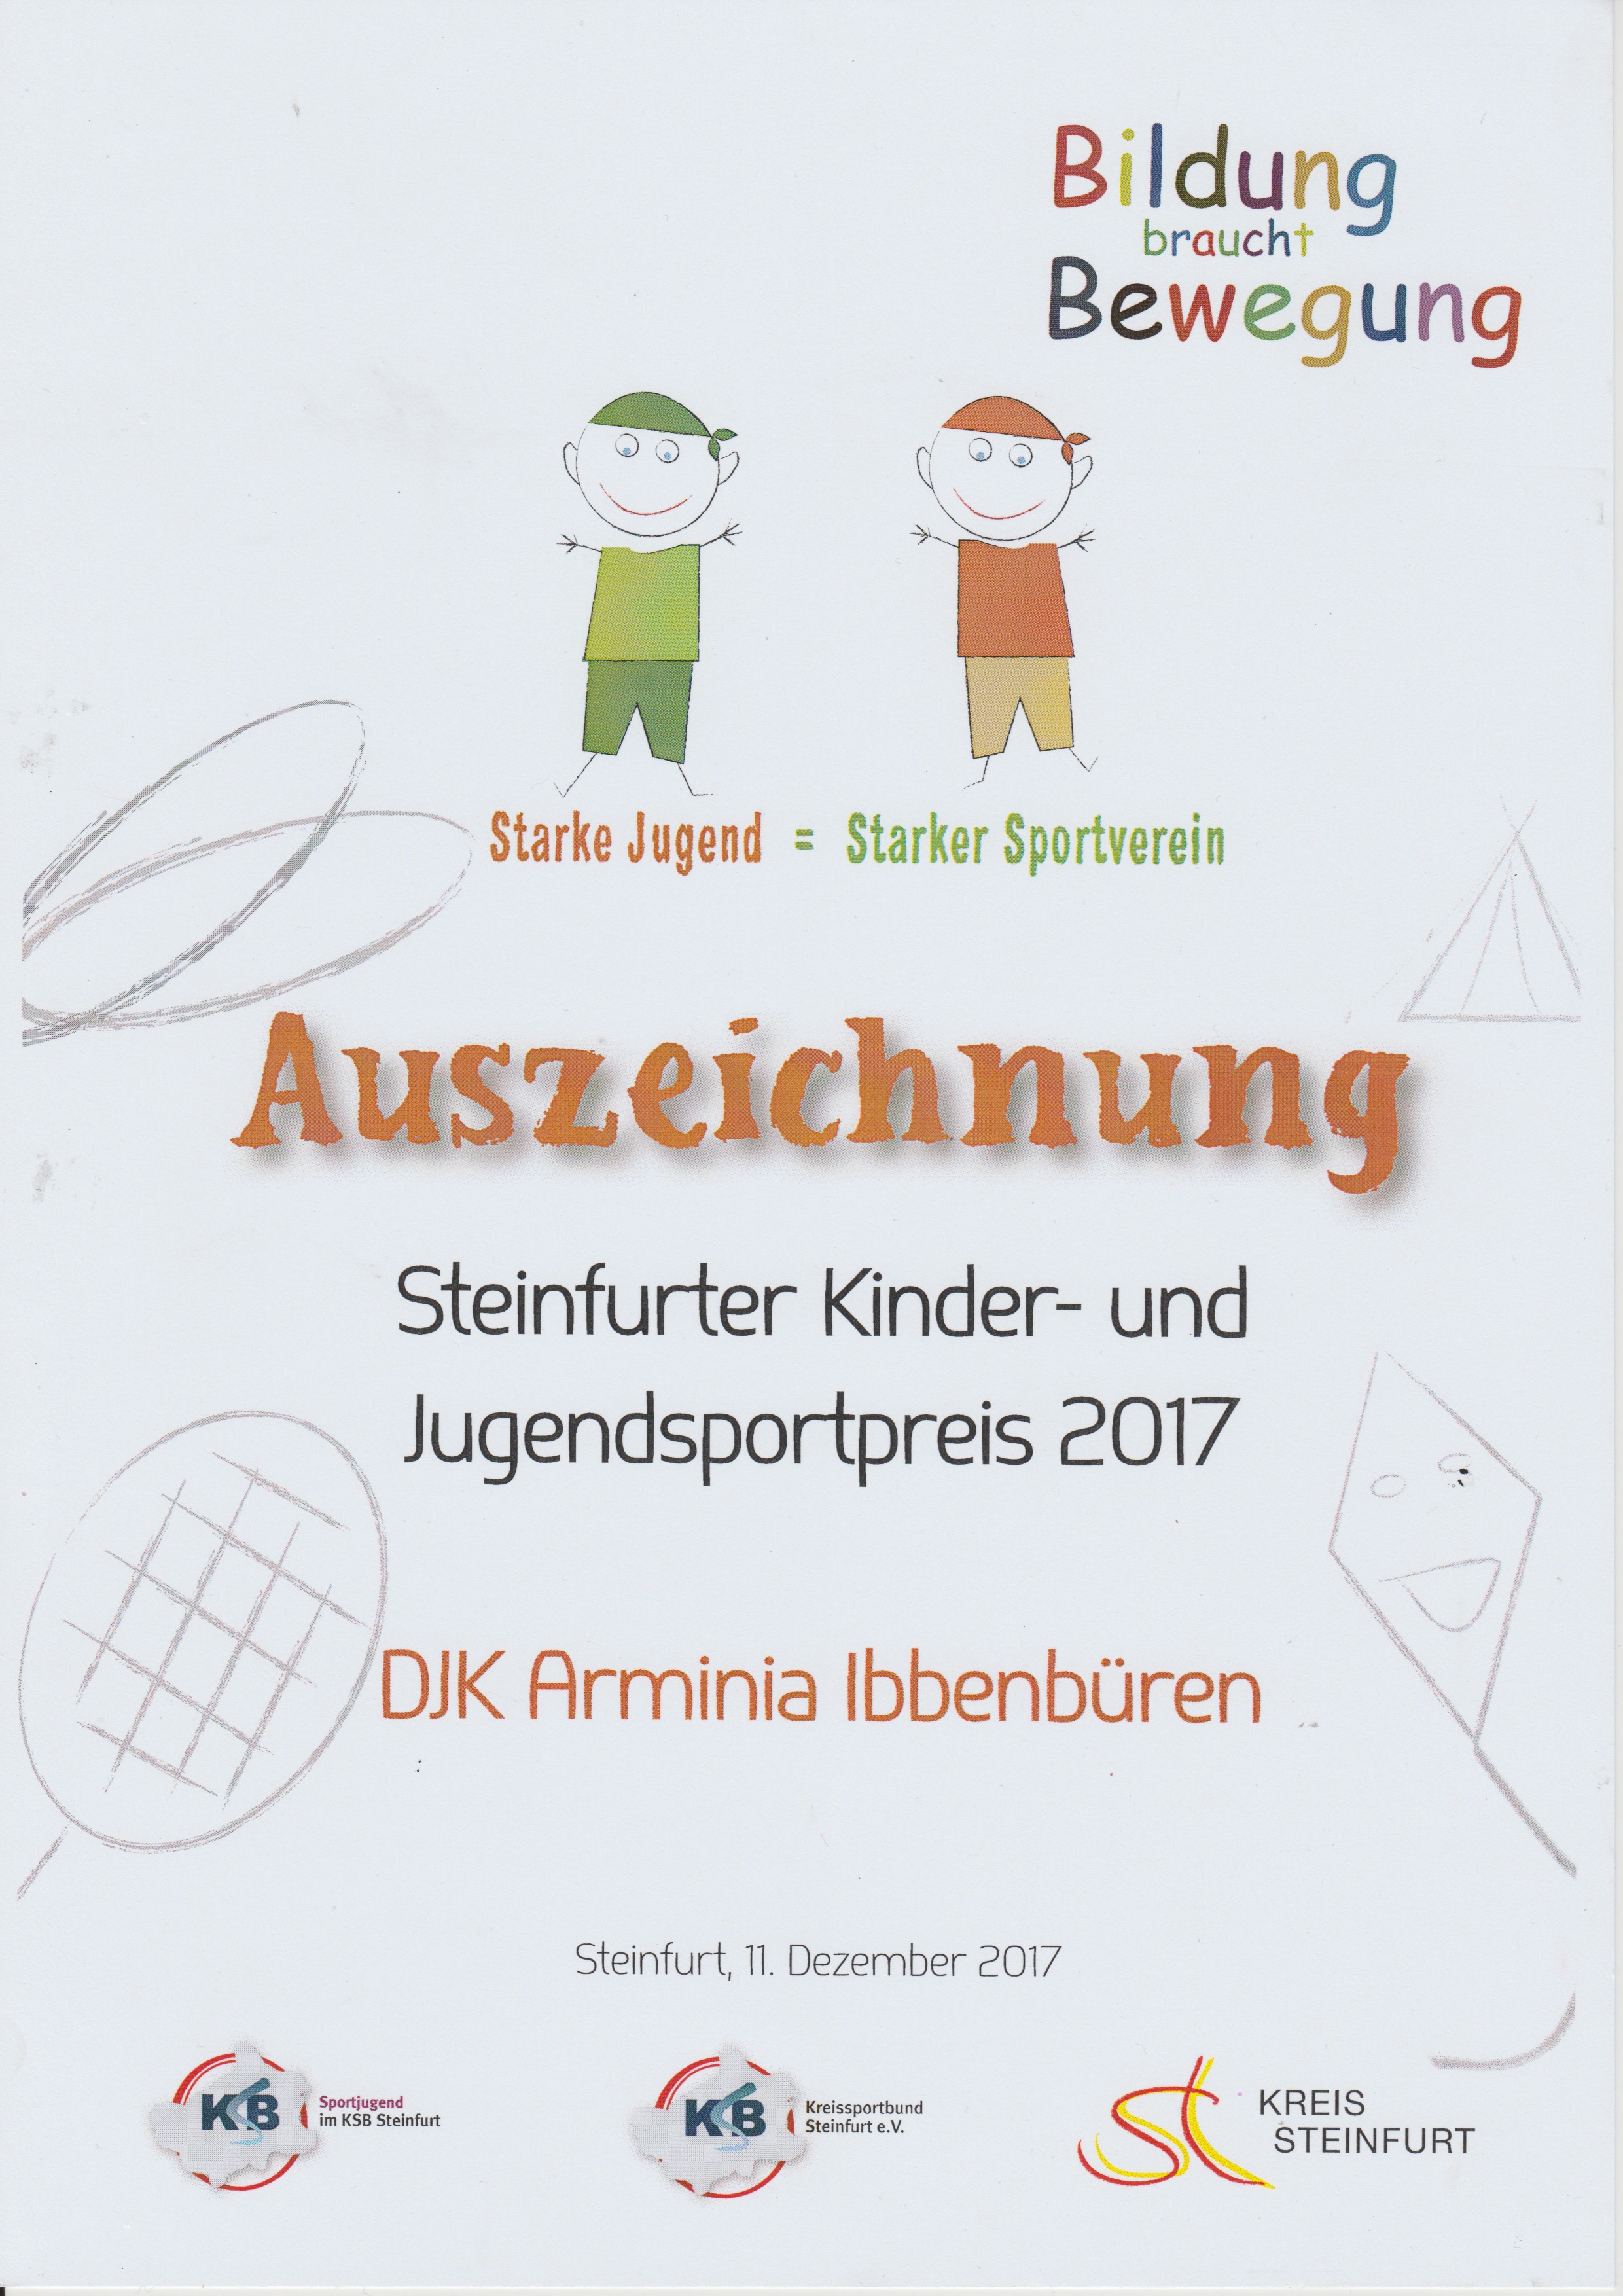 Steinfurter Kinder- und Jugendpreis 2017